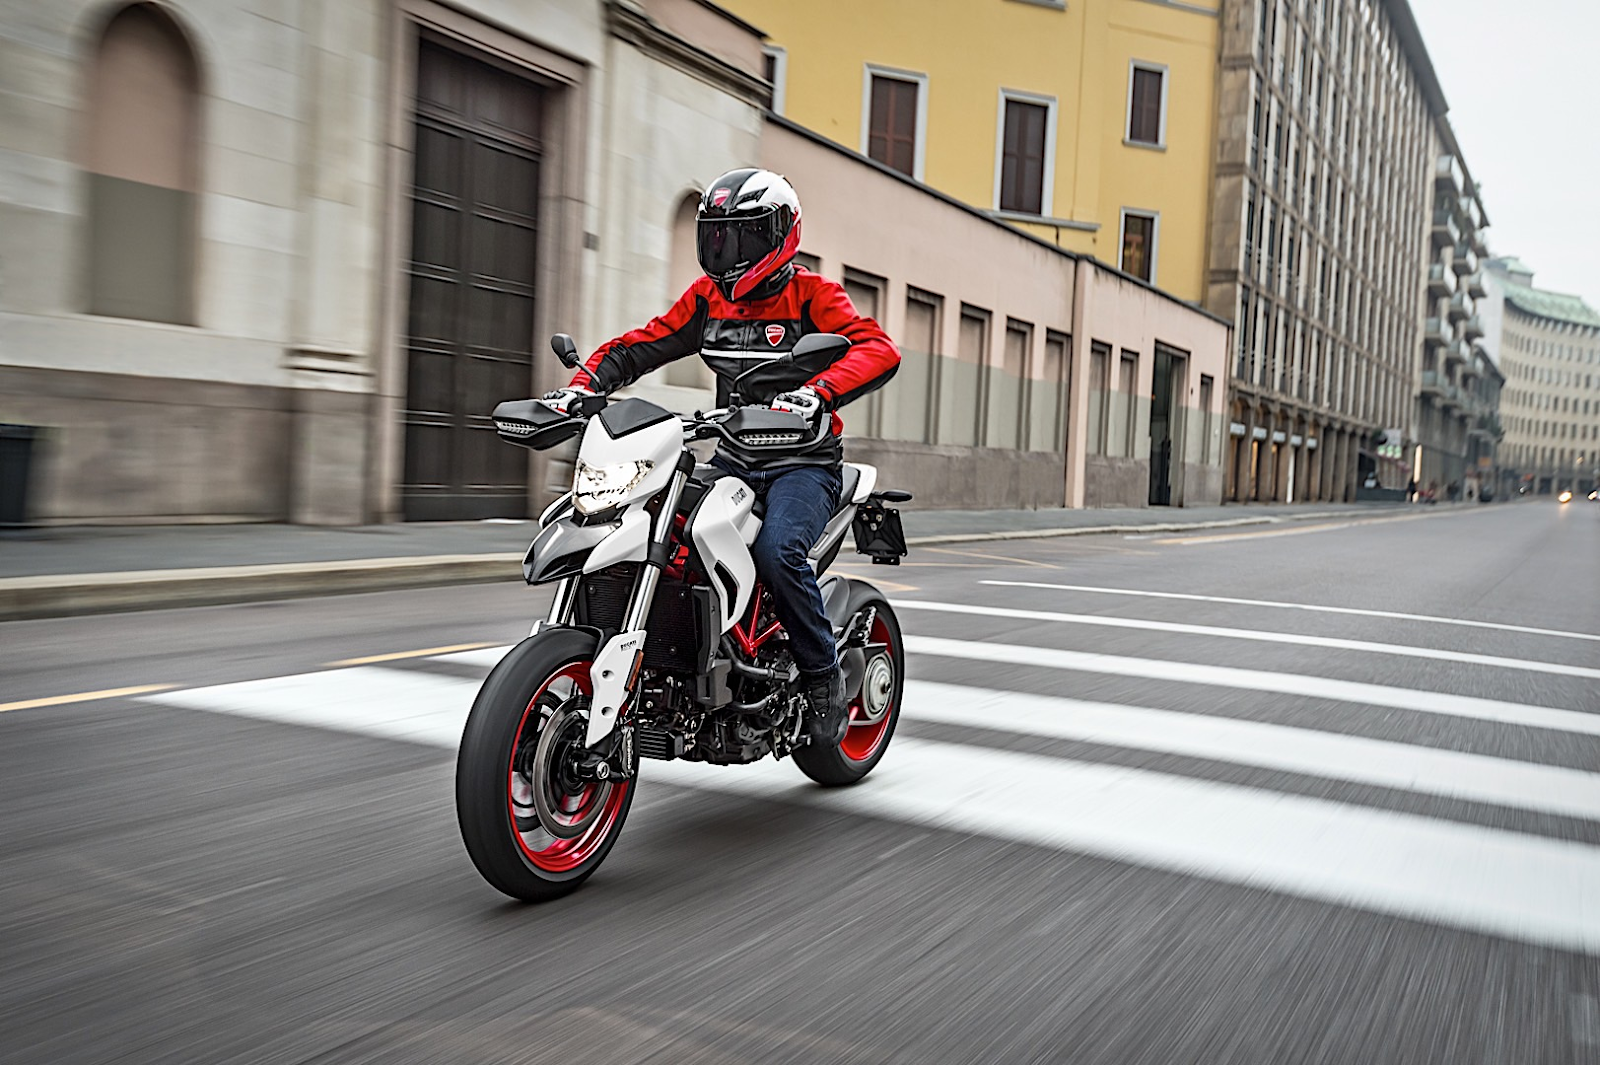 Bảng giá xe Ducati Hypermotard 2021 cập nhật kèm đánh giá chi tiết